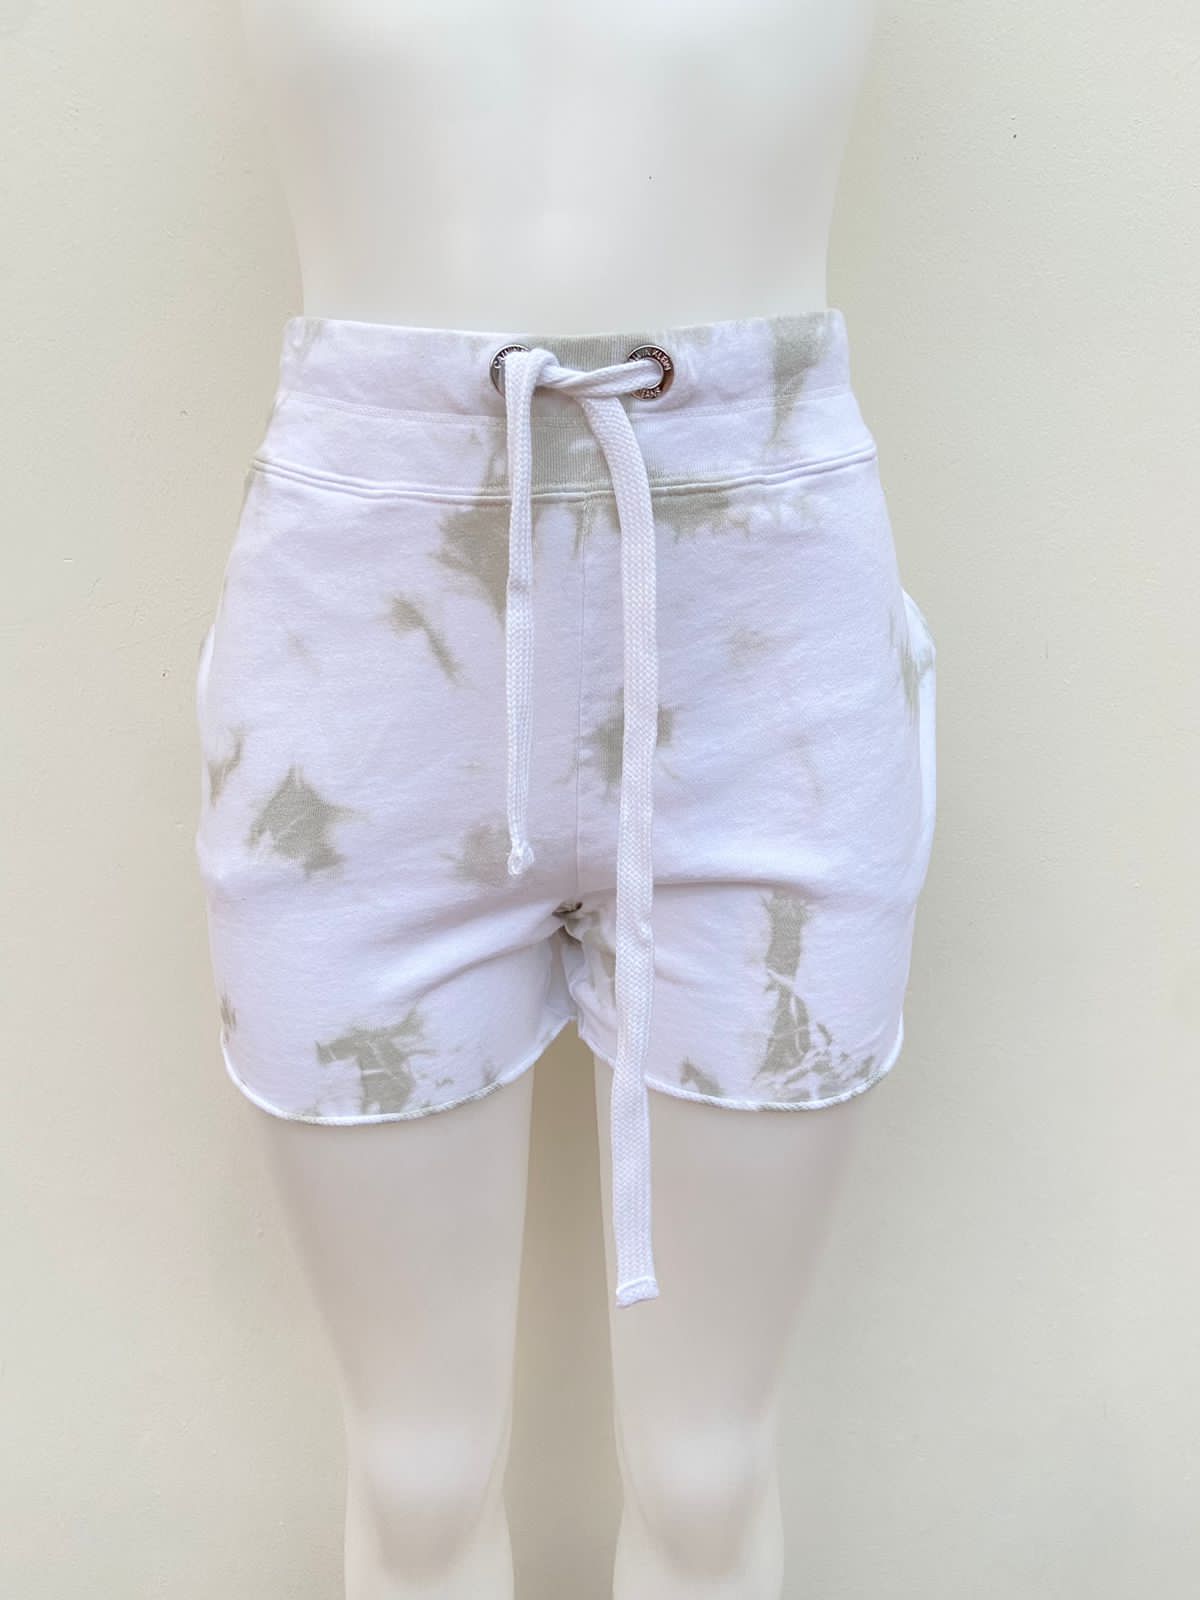 Short Calvin Klein Jeans original, blanco con degradado verde oliva, lazo ajustable en el centro blanco.